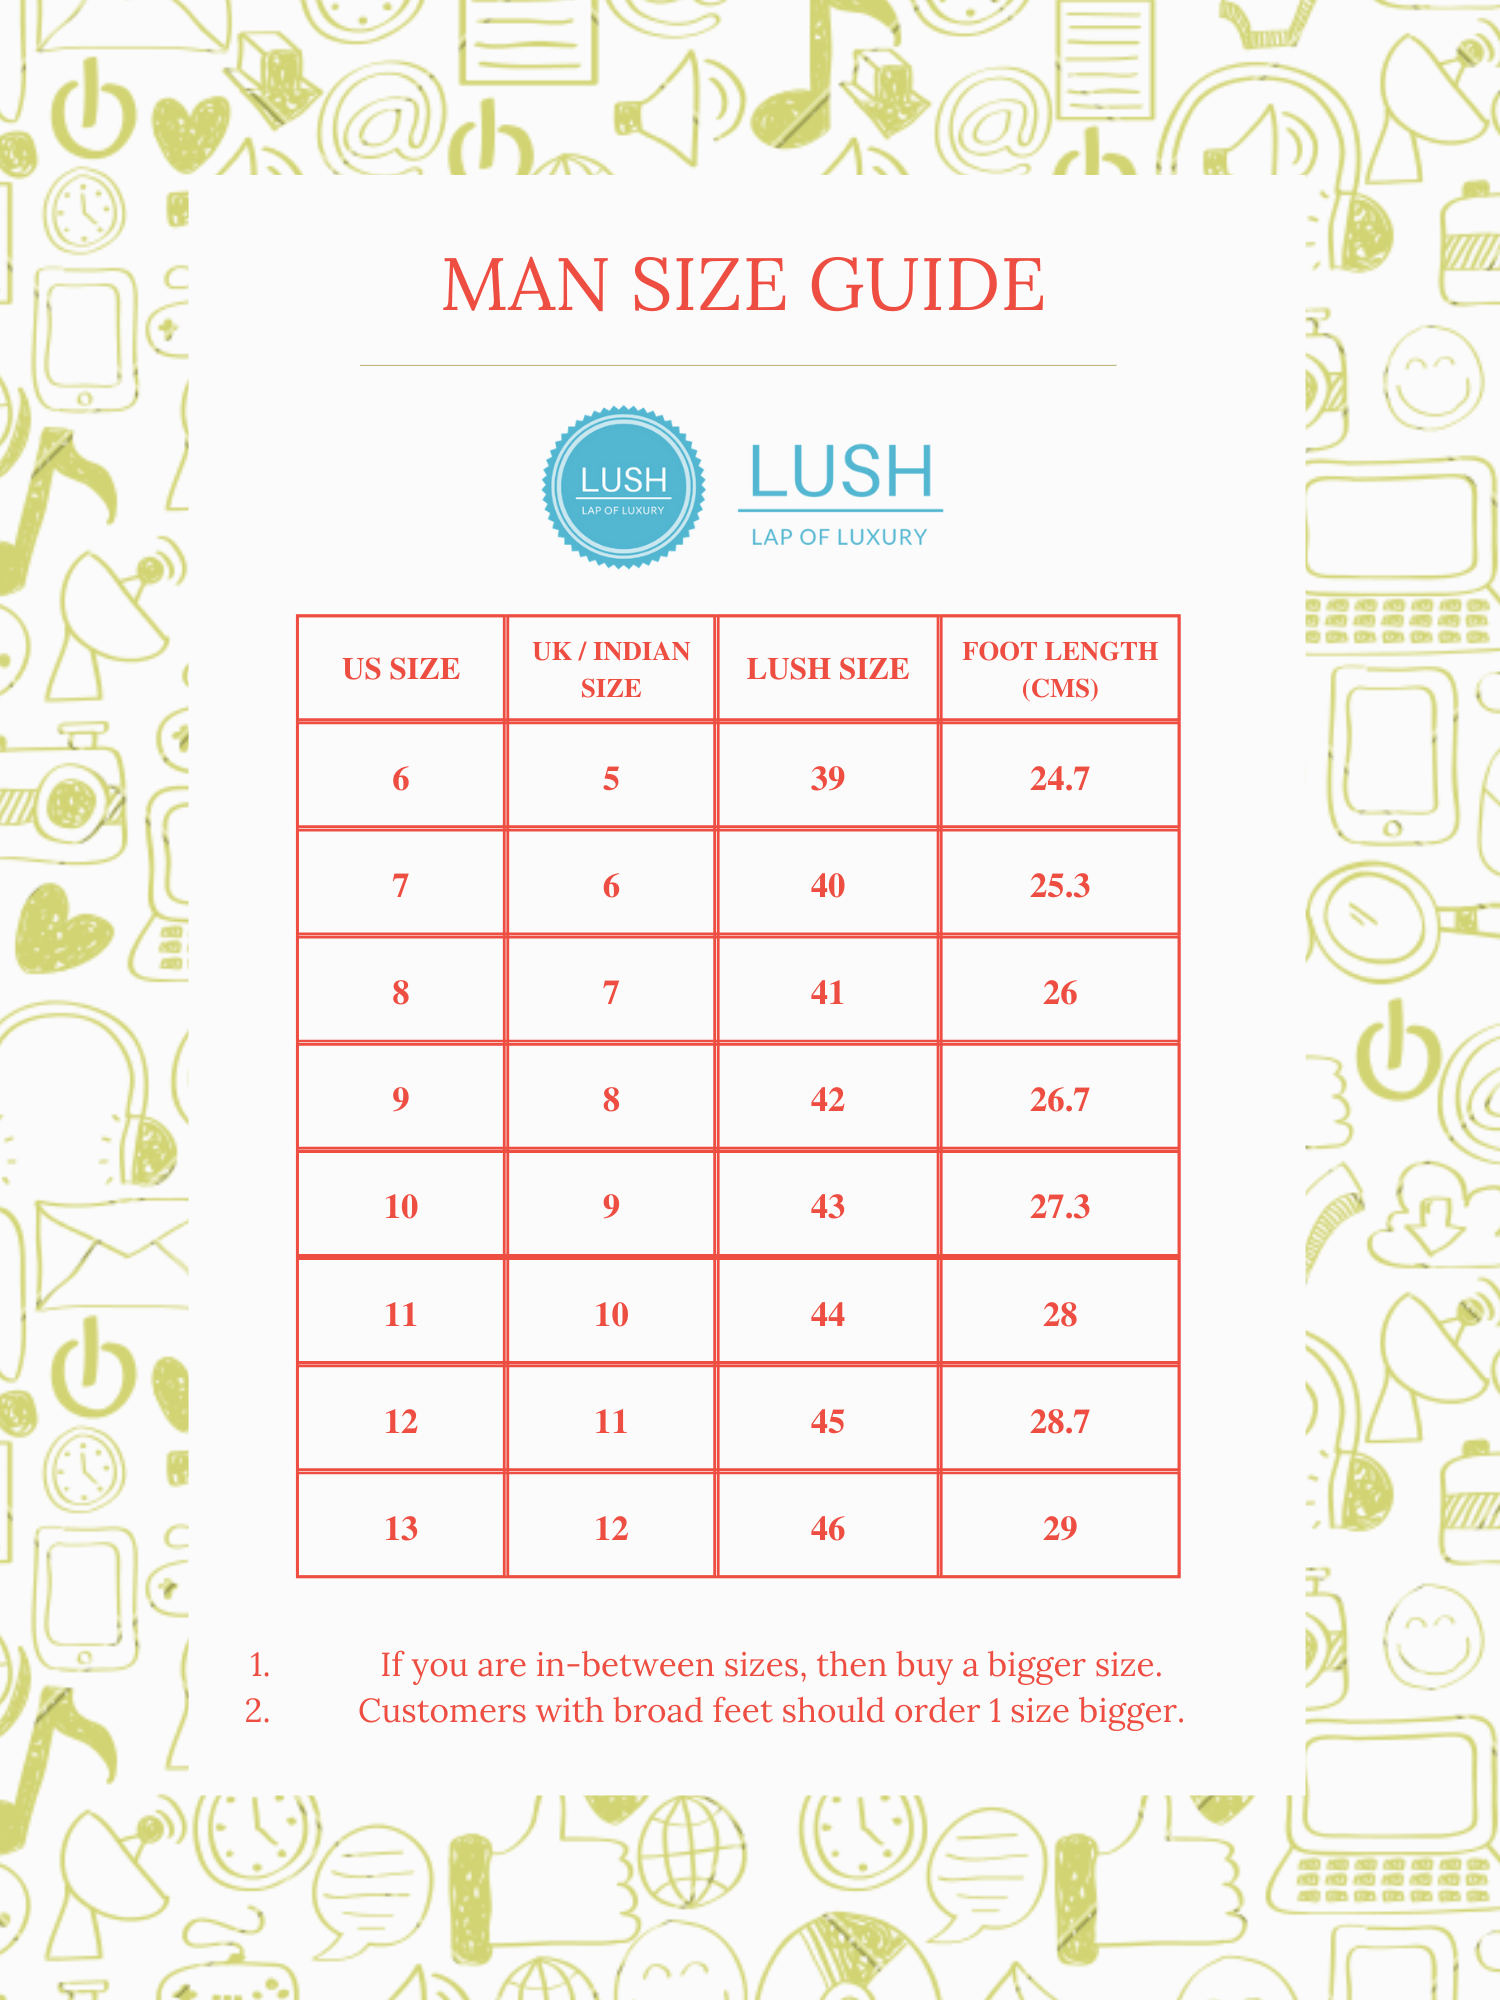 Men’s Shoes Size Chart